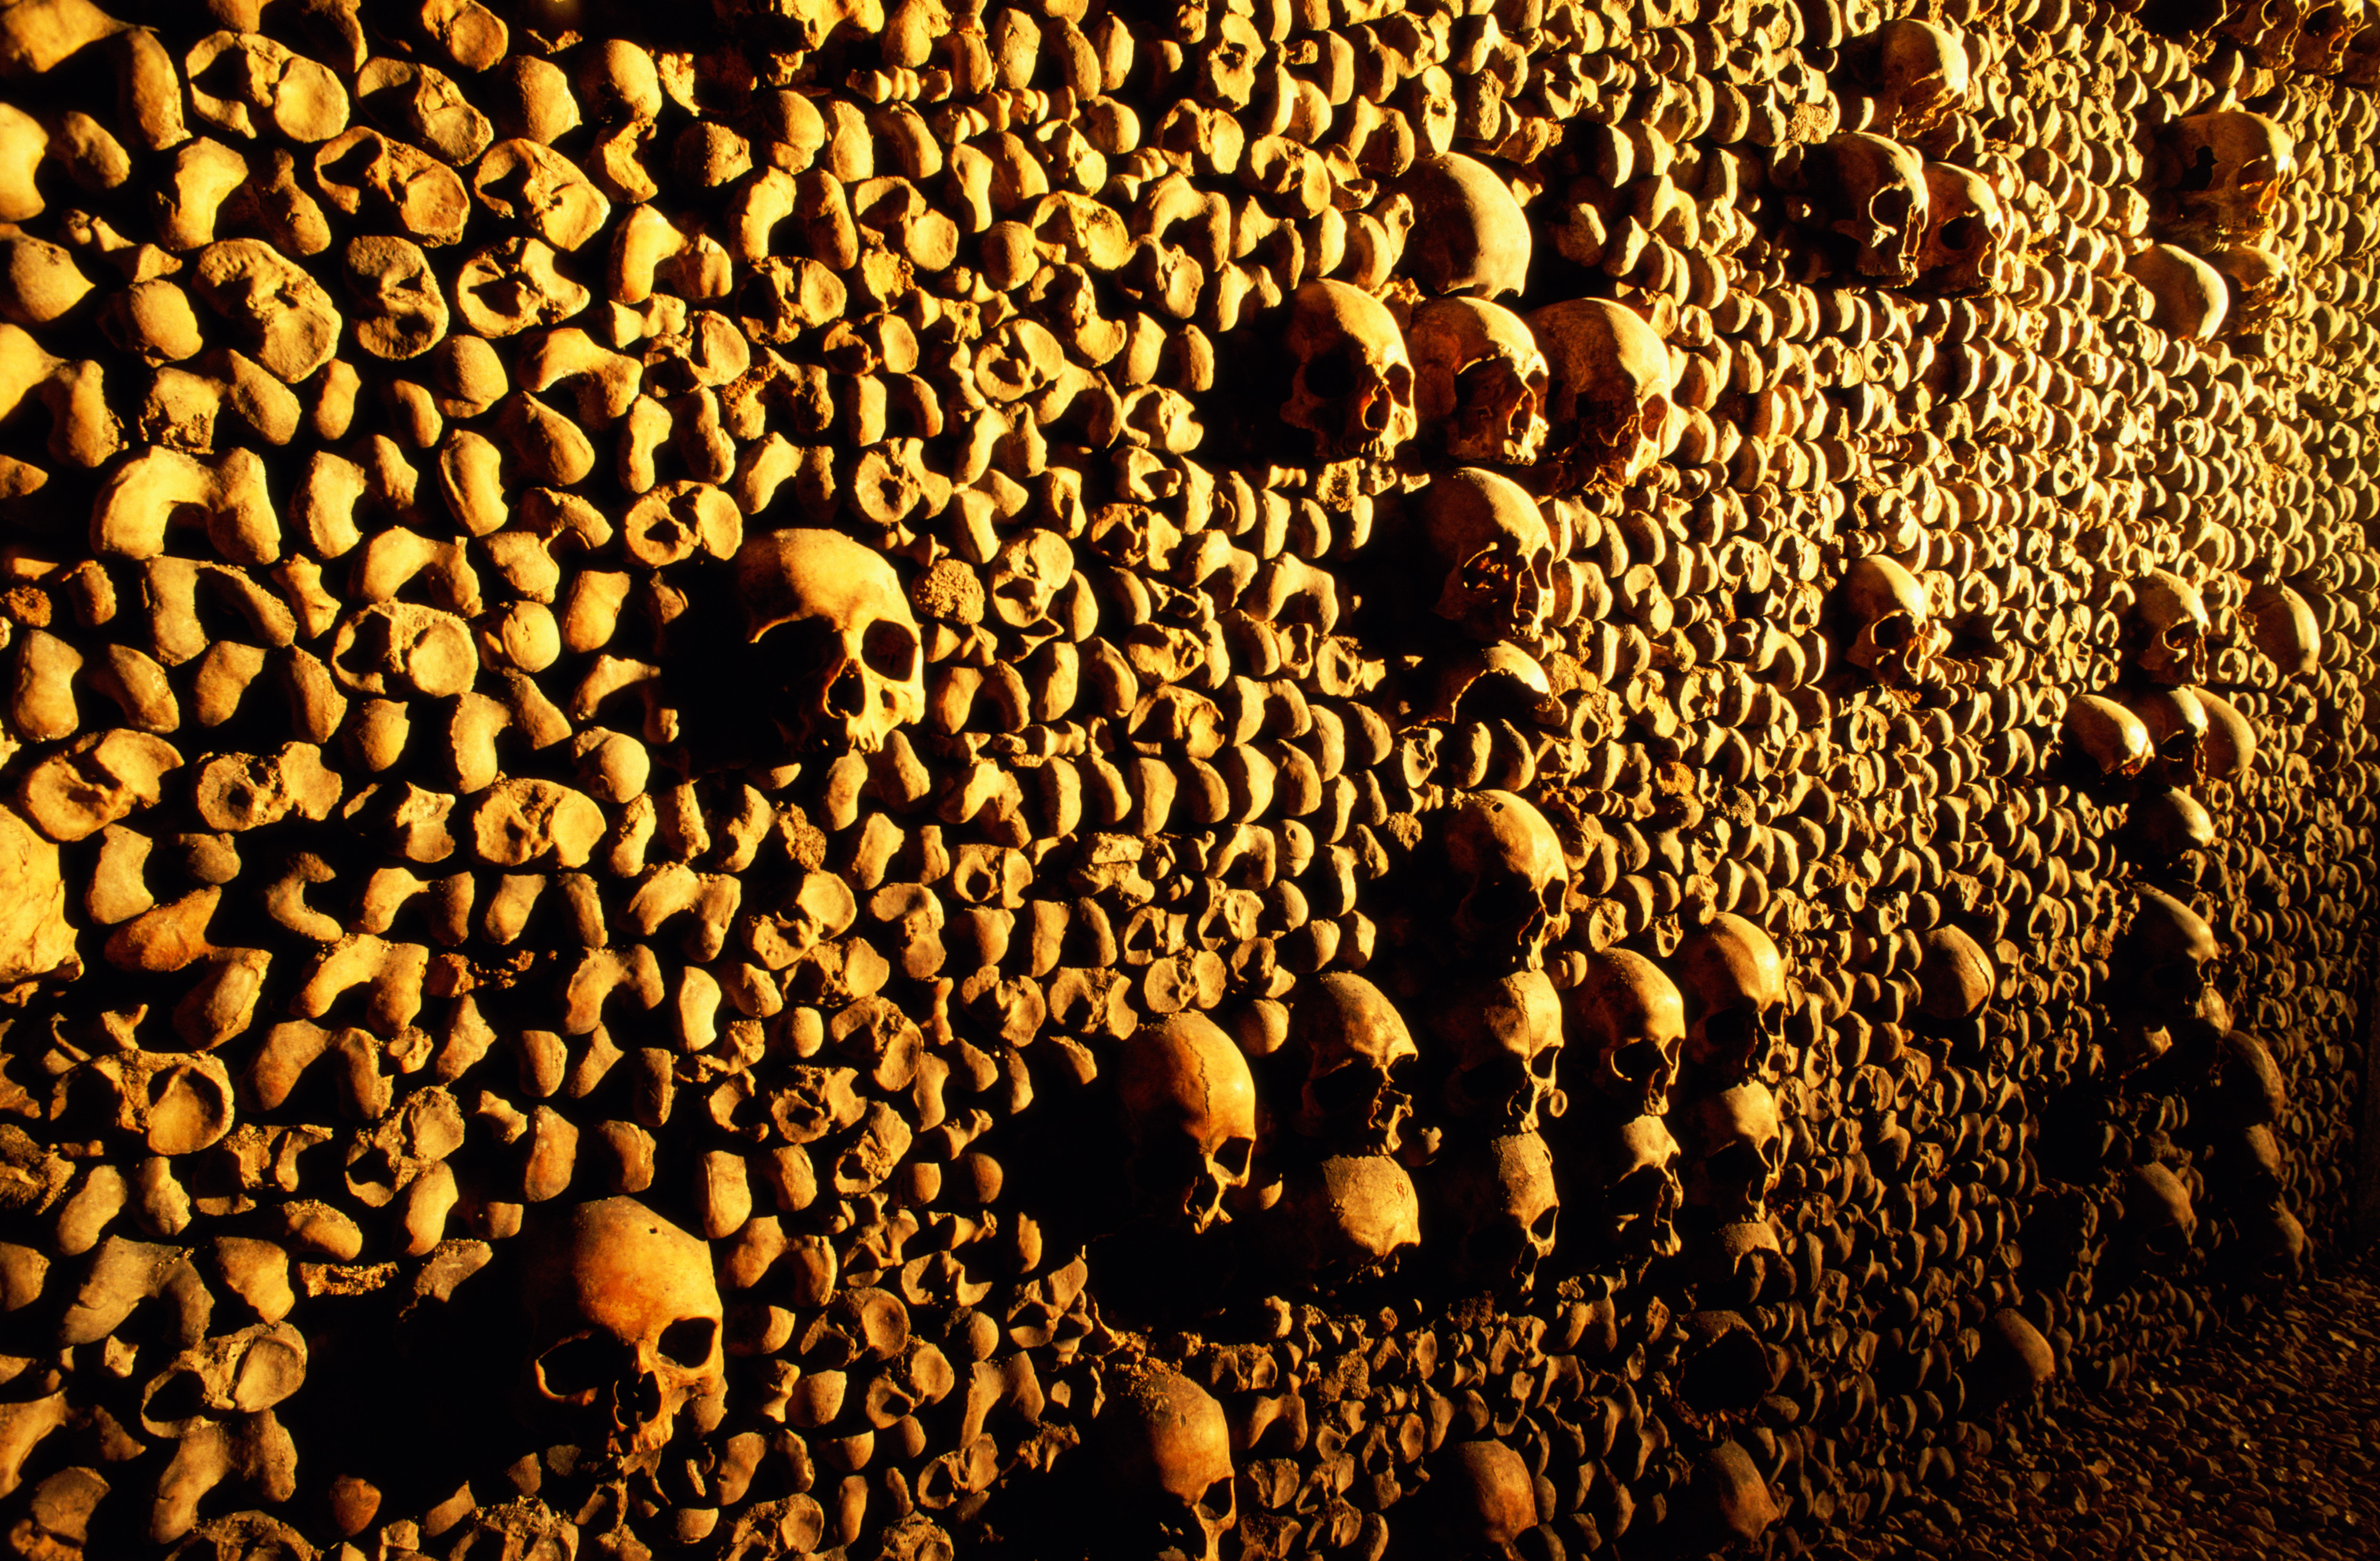 Тоннель из костей и черепов при тусклом желтом свете в Парижских катакомбах, Франция